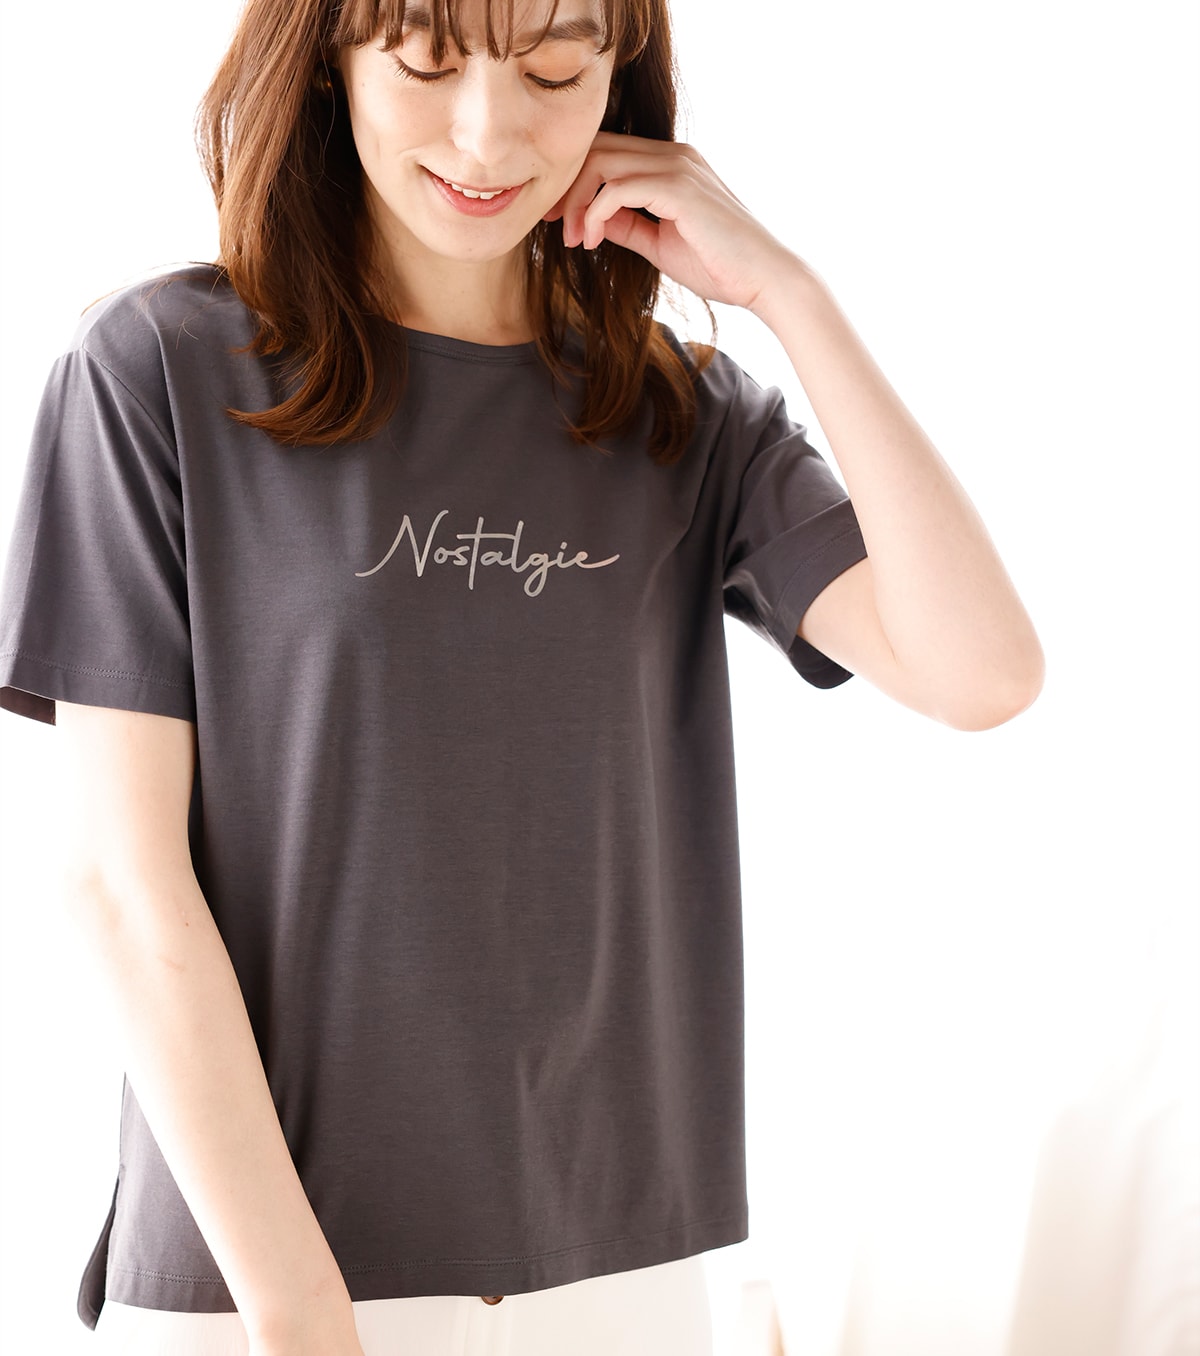 ひや楽ロゴプリントTシャツ・チャコールを着用している女性の写真